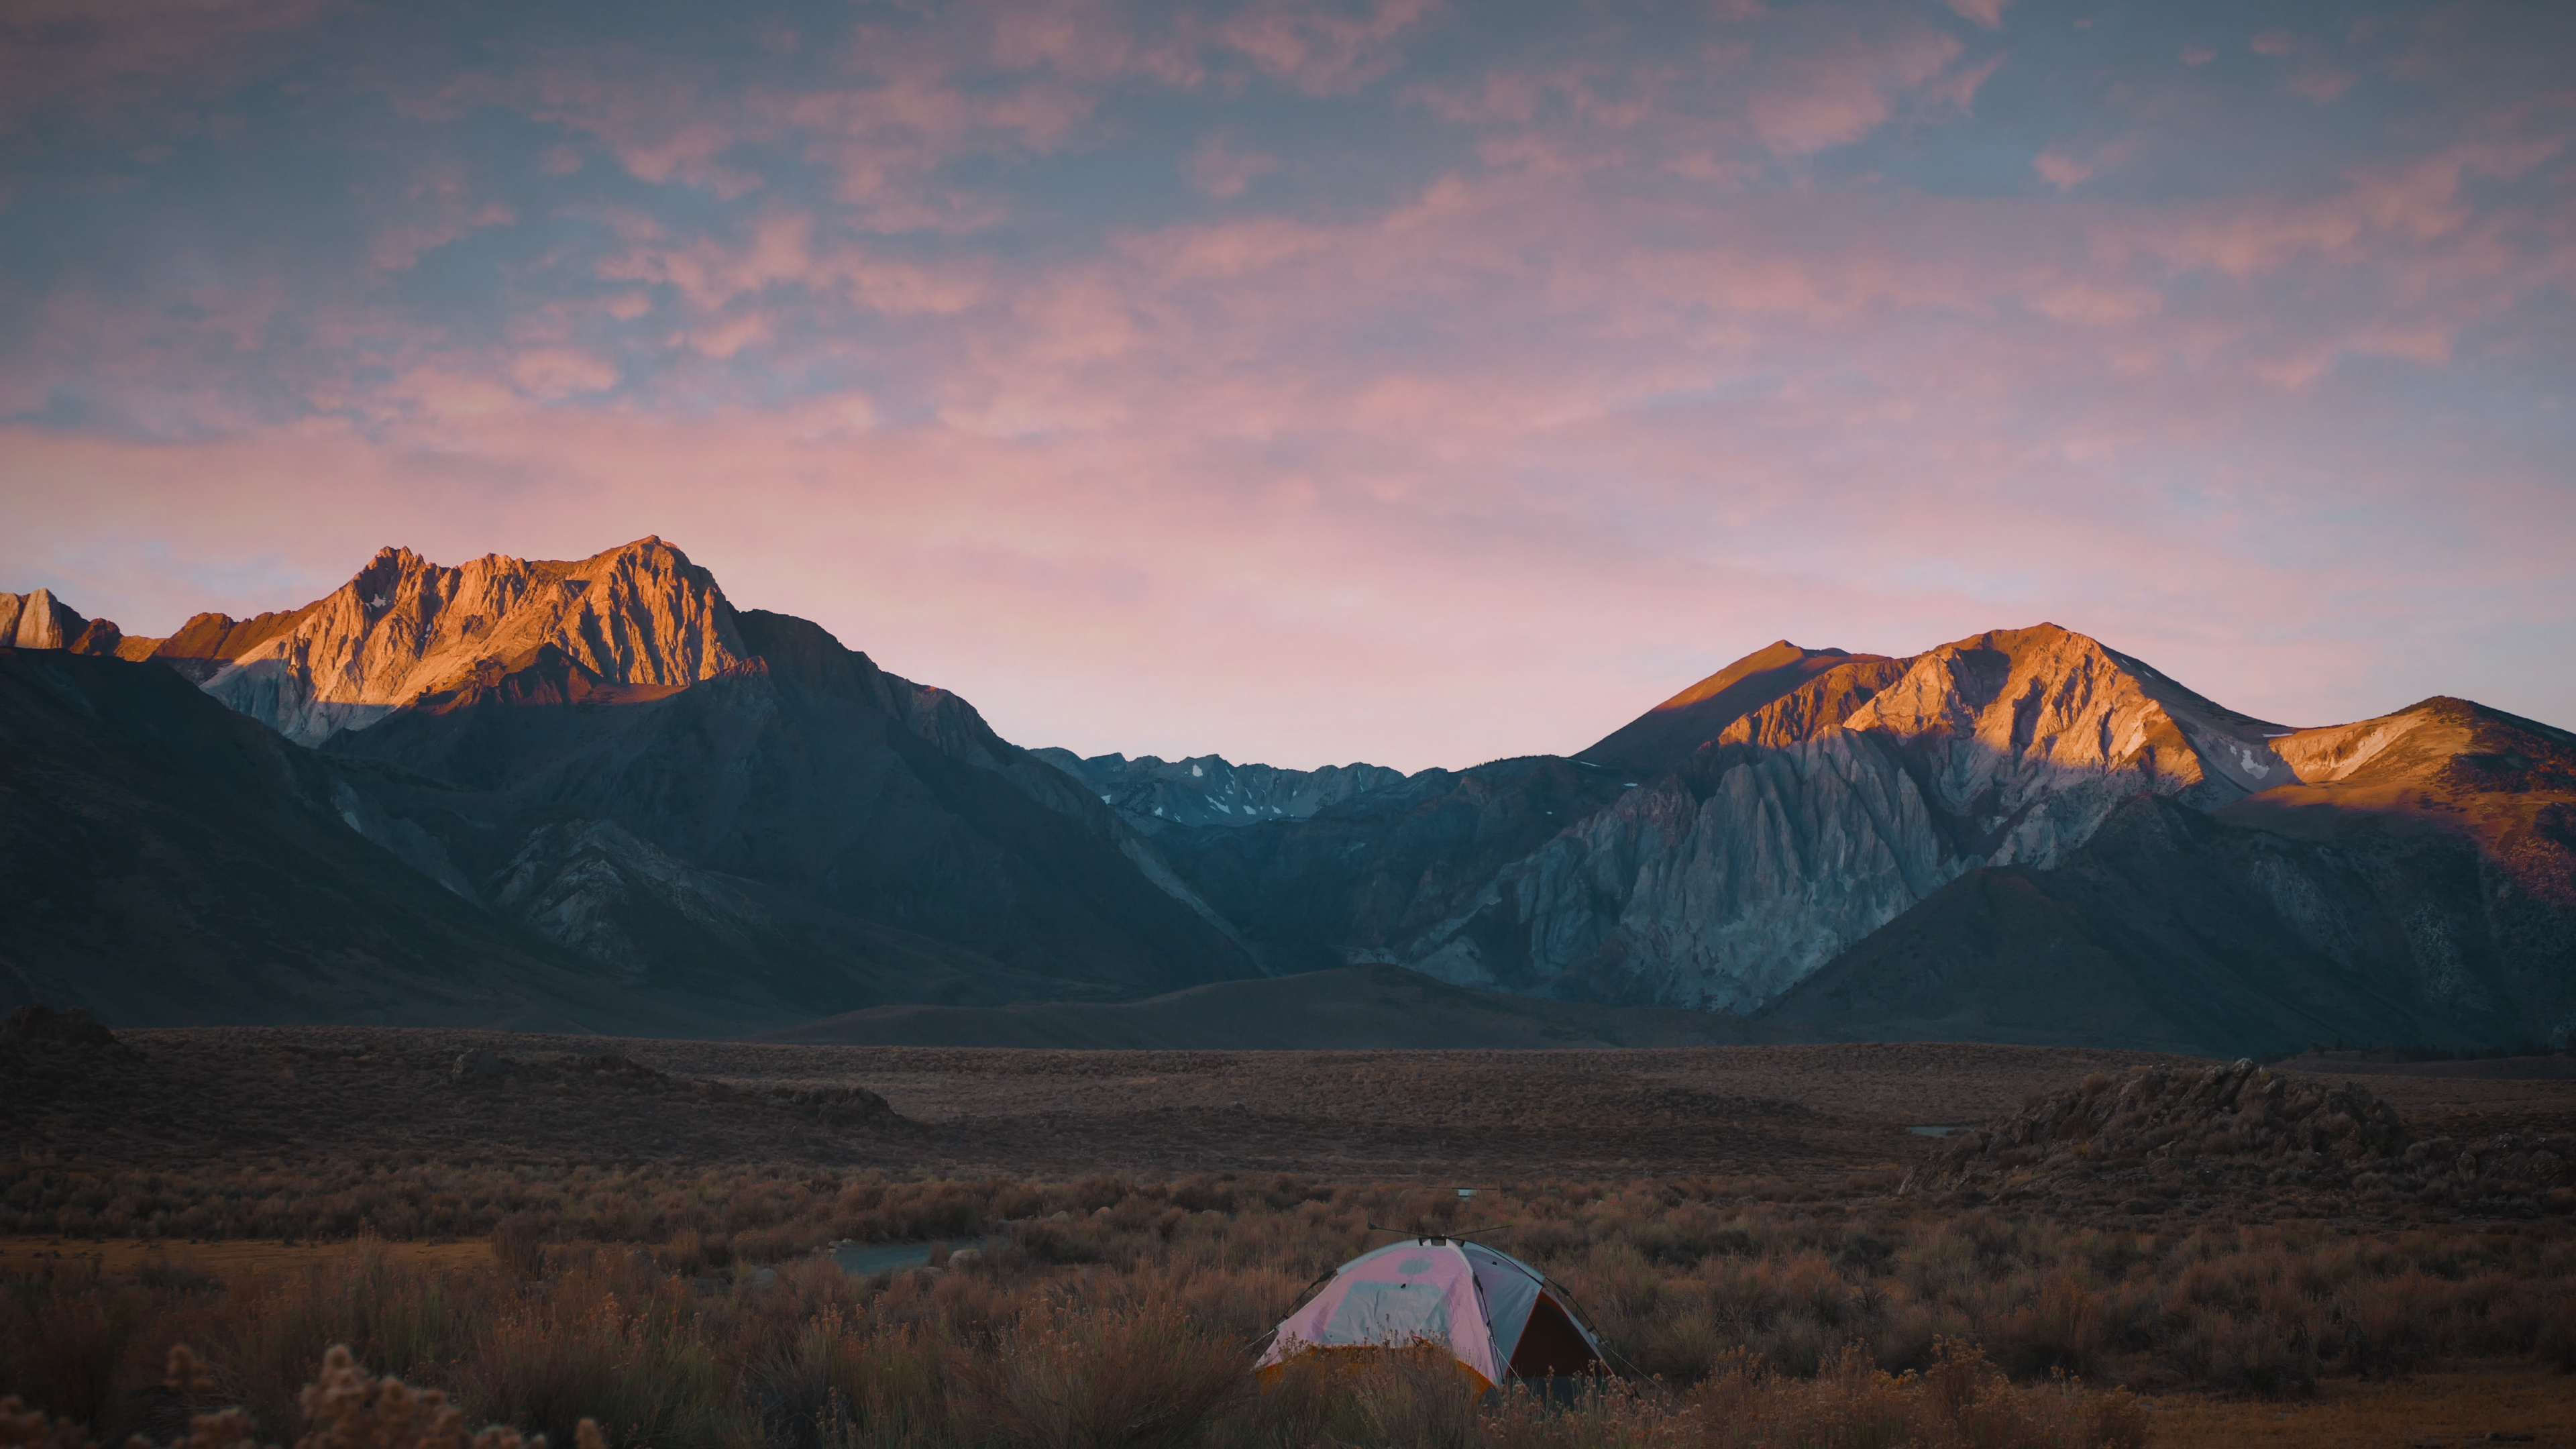 Desierto, Camping, Las Formaciones Montañosas, Montaje de Escenografía, Colina. Wallpaper in 3840x2160 Resolution